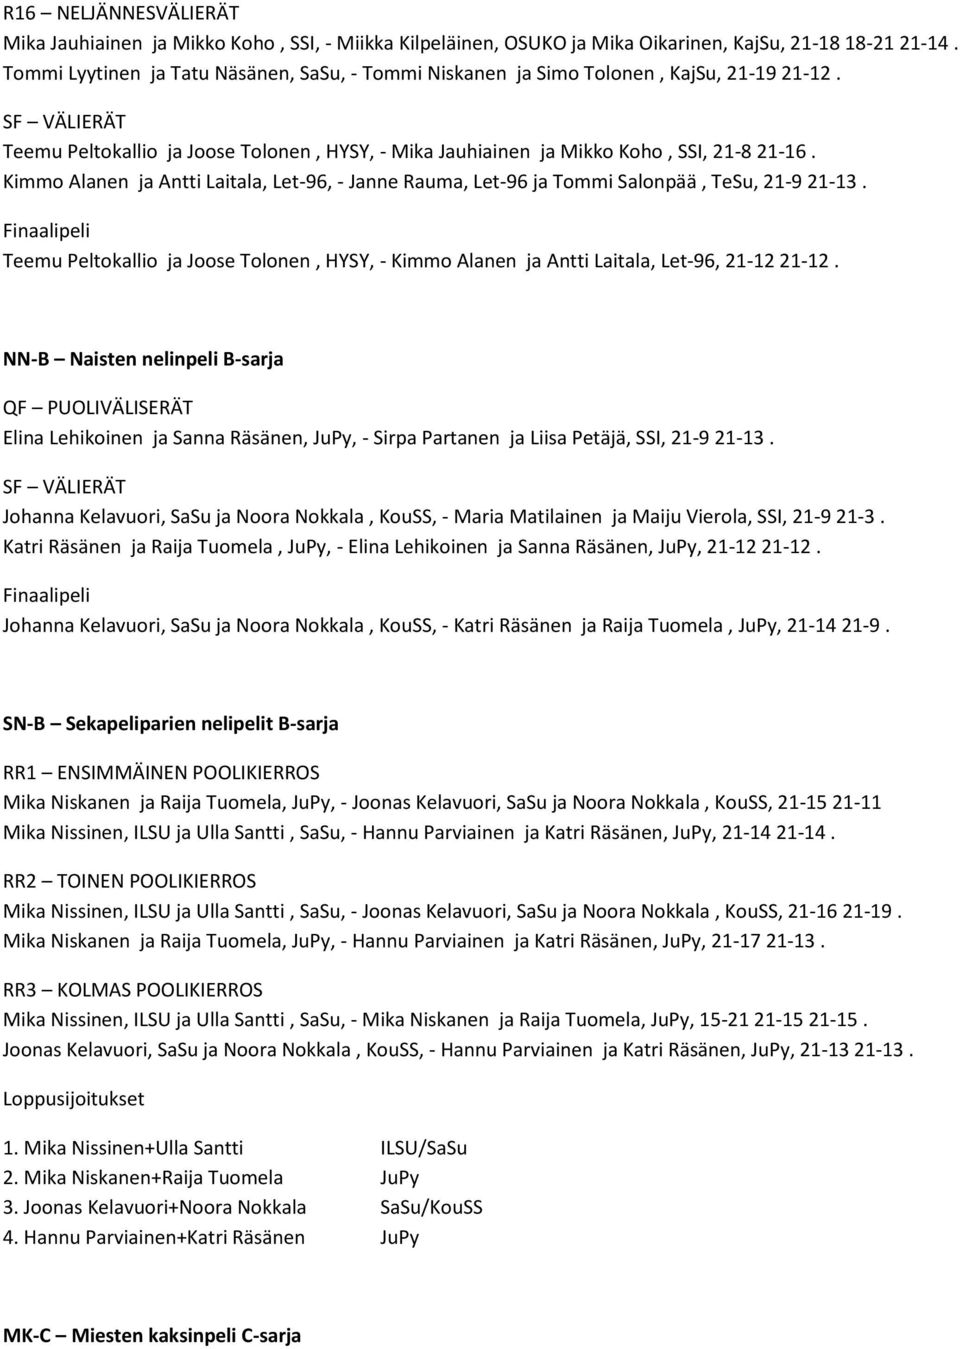 Kimmo Alanen ja Antti Laitala, Let-96, - Janne Rauma, Let-96 ja Tommi Salonpää, TeSu, 21-9 21-13. Teemu Peltokallio ja Joose Tolonen, HYSY, - Kimmo Alanen ja Antti Laitala, Let-96, 21-12 21-12.